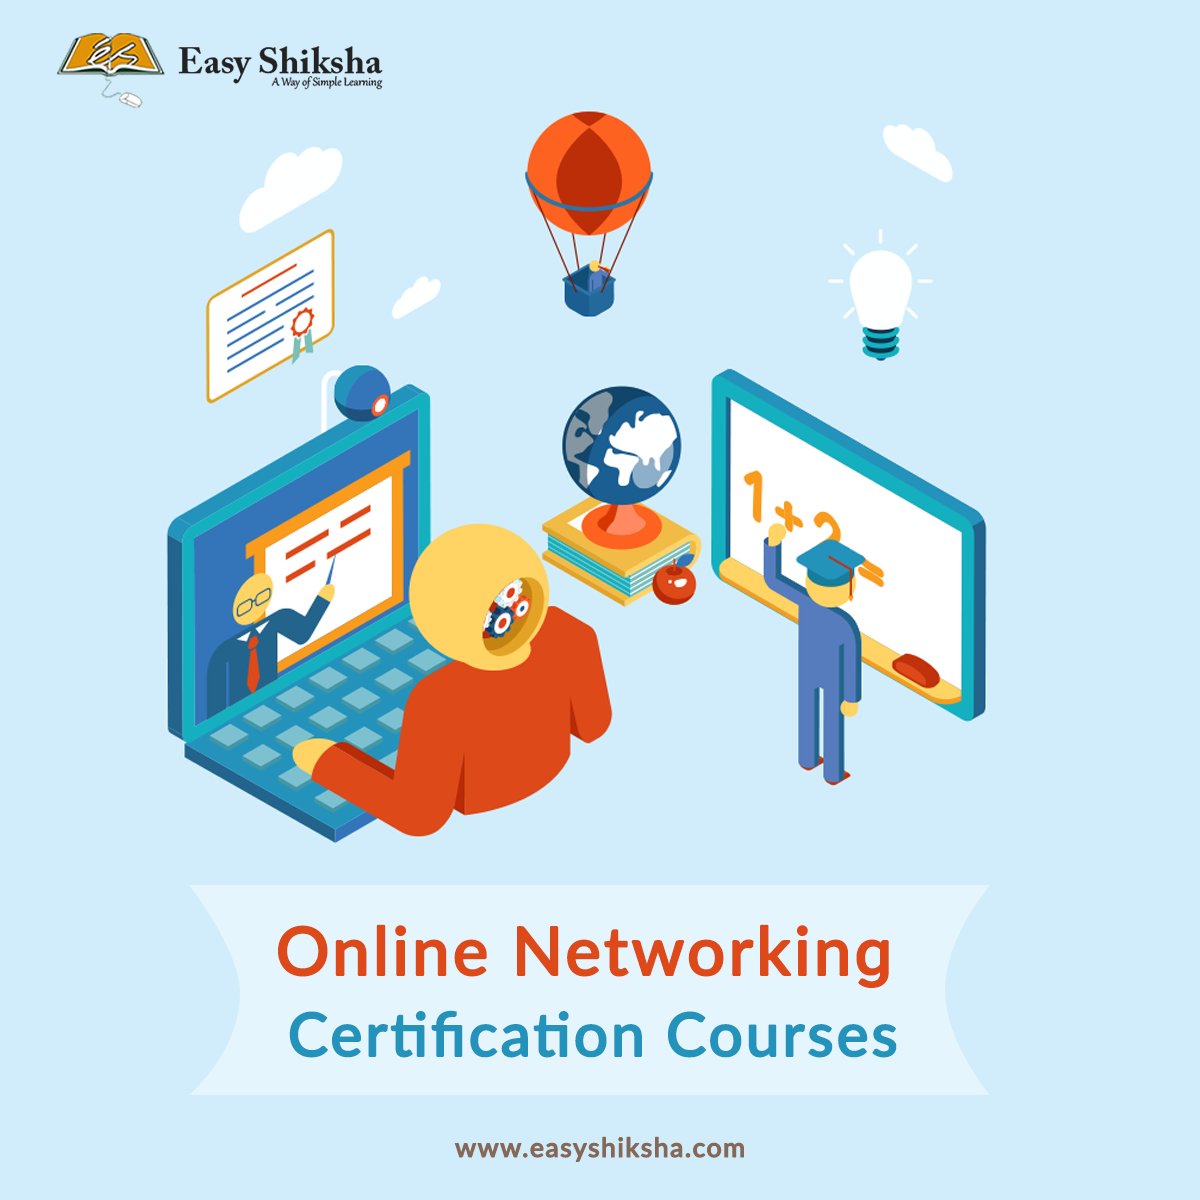 Online Networking Certification Courses | EasyShiksha
.
🌐𝗩𝗶𝘀𝗶𝘁 𝗪𝗲𝗯𝘀𝗶𝘁𝗲: bit.ly/3tZmhRe
.
.
#easyshiksha #education #NetworkingCourse #learningspace #learningplatform #careerhelp #onlinecourse #certificationcourse